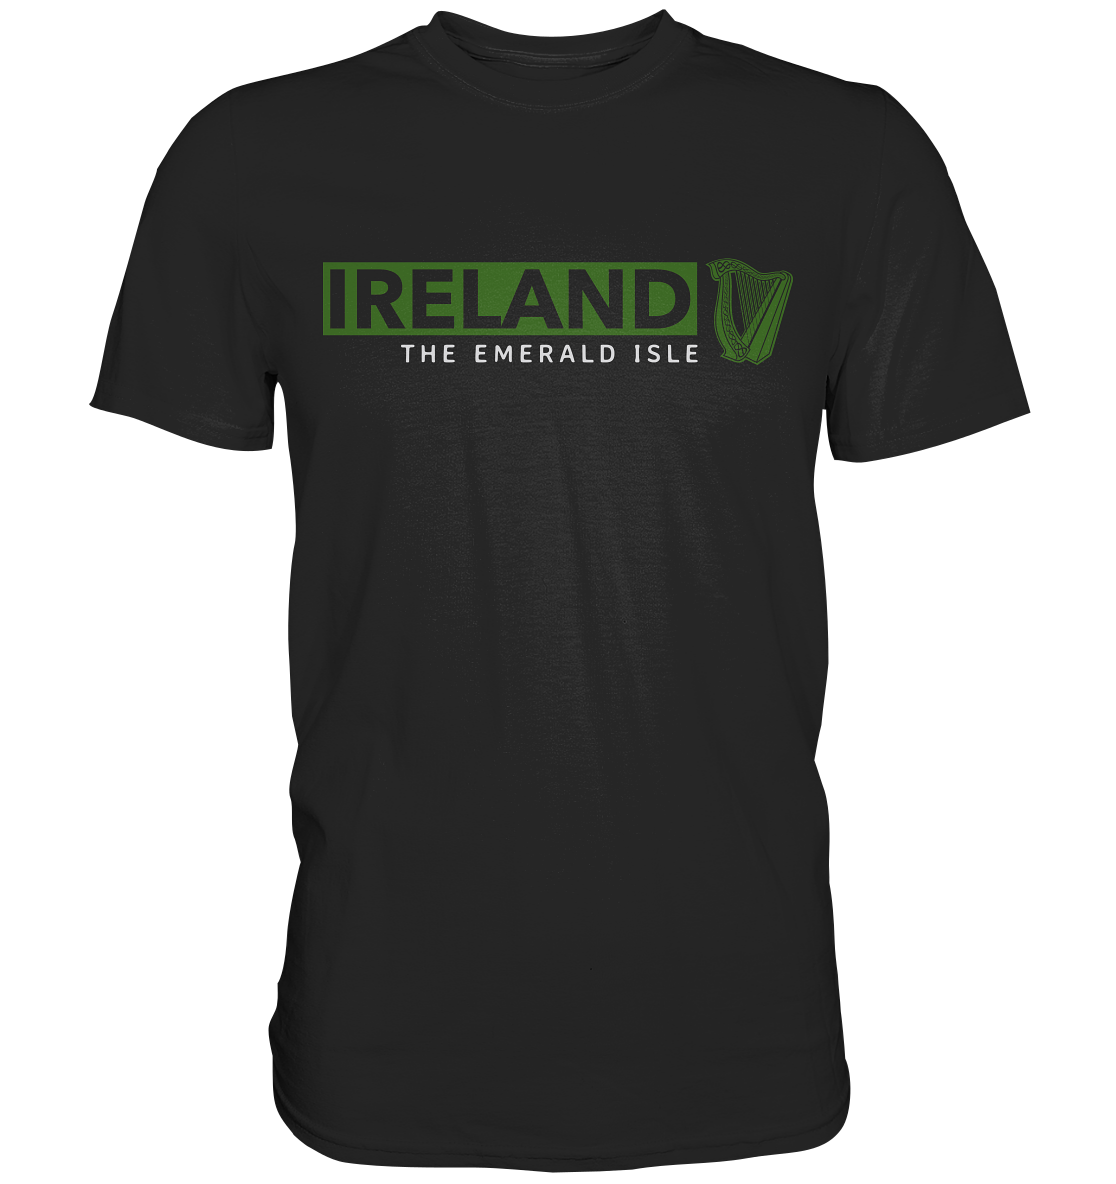 Ireland "The Emerald Isle / Harp" - Premium Shirt